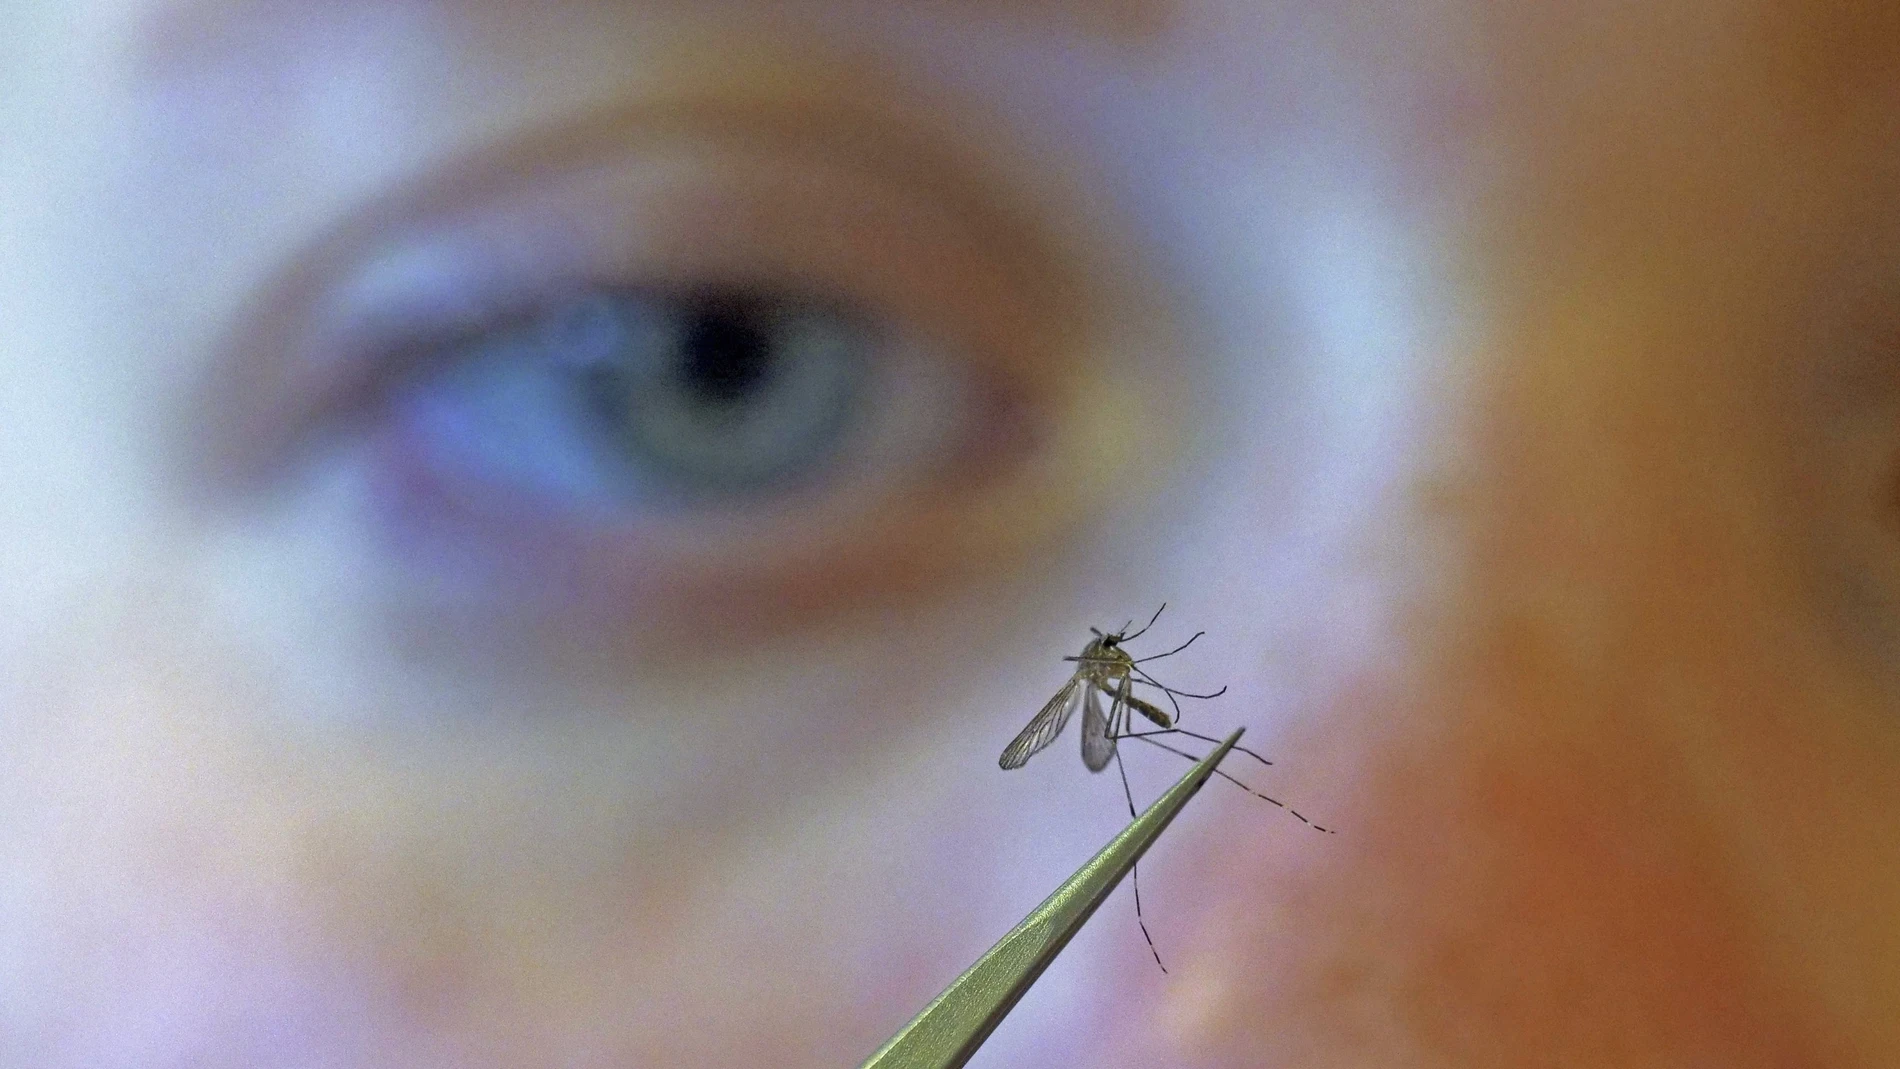 Los mosquitos son más activos por la tarde y por la noche. Y viven en zonas cercanas donde hay agua acumulada (lagunas, charcos, macetas con agua) | Fuente: AP Photo/Rick Bowmer